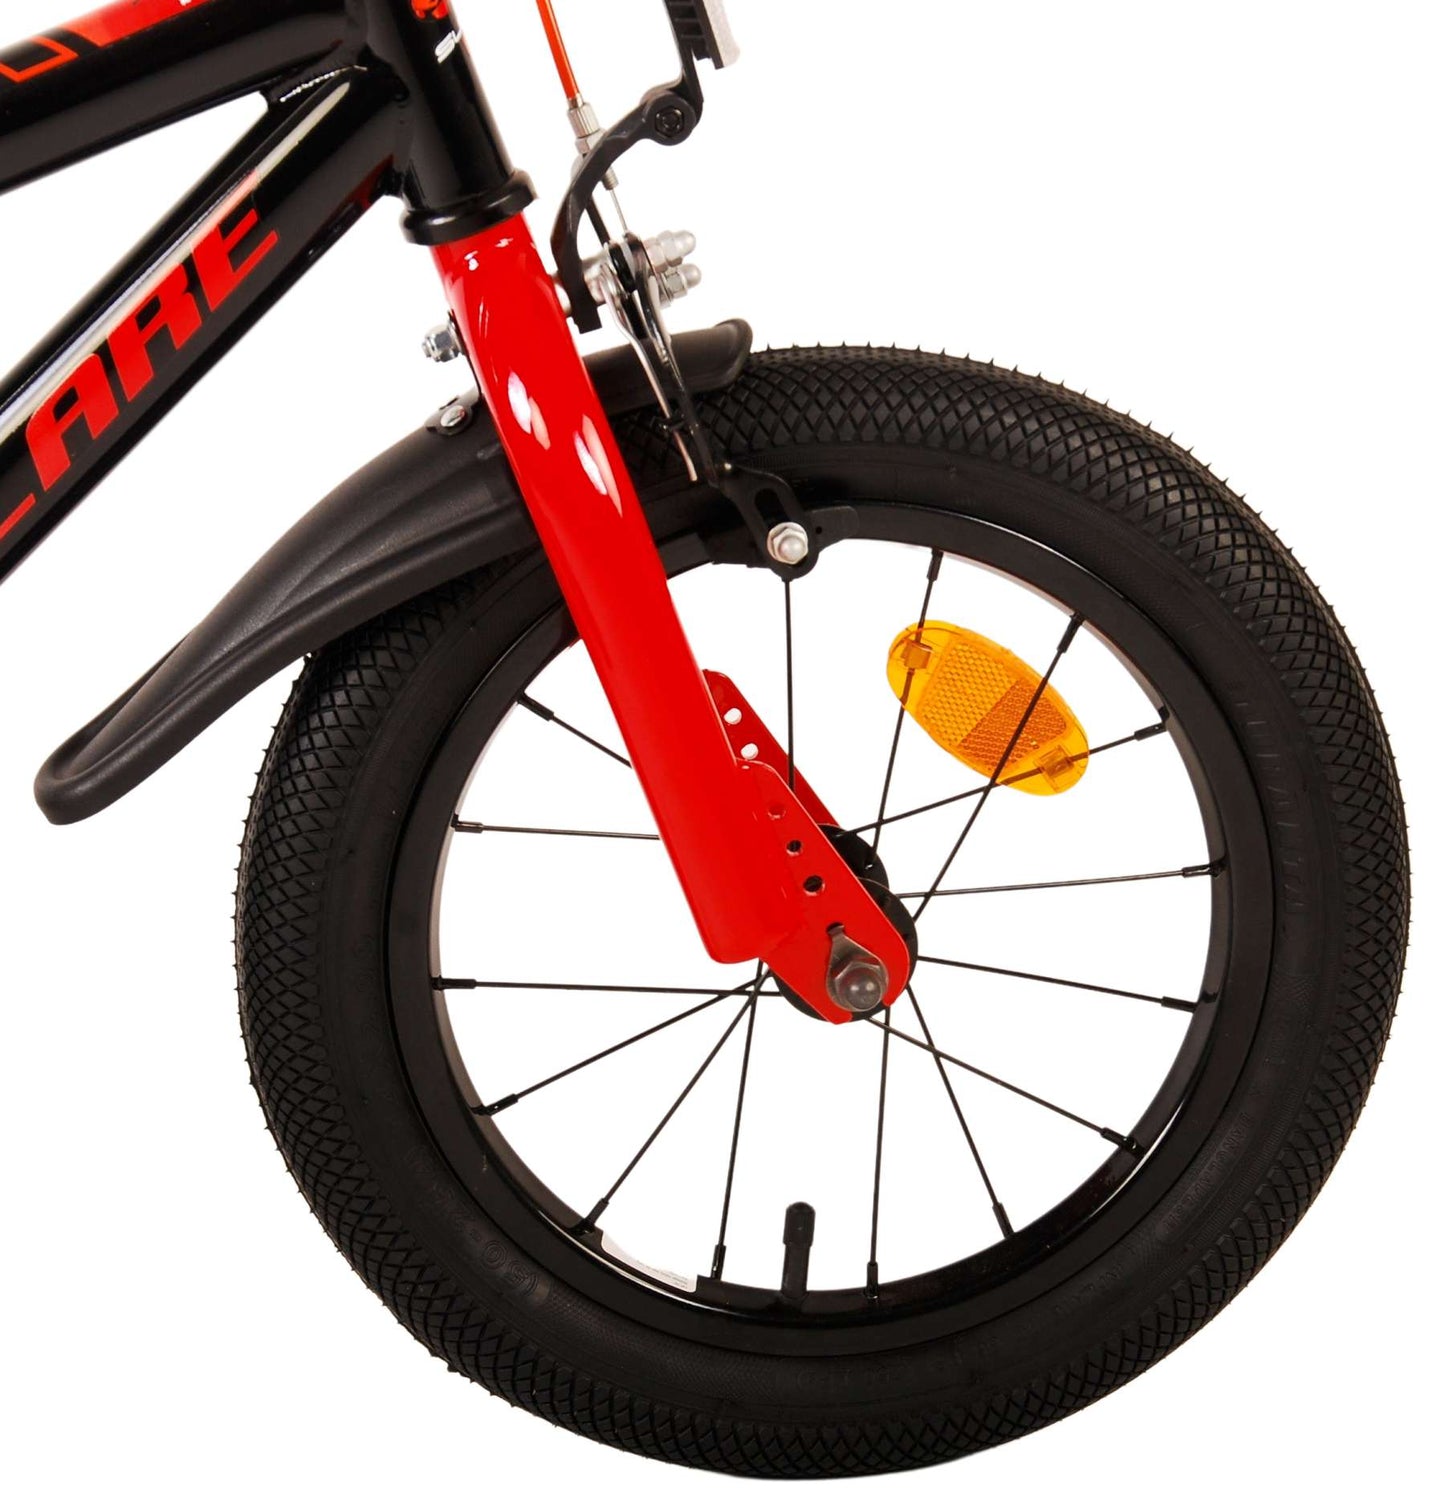 Volare Super GT Bike para niños - Niños - 14 pulgadas - Rojo